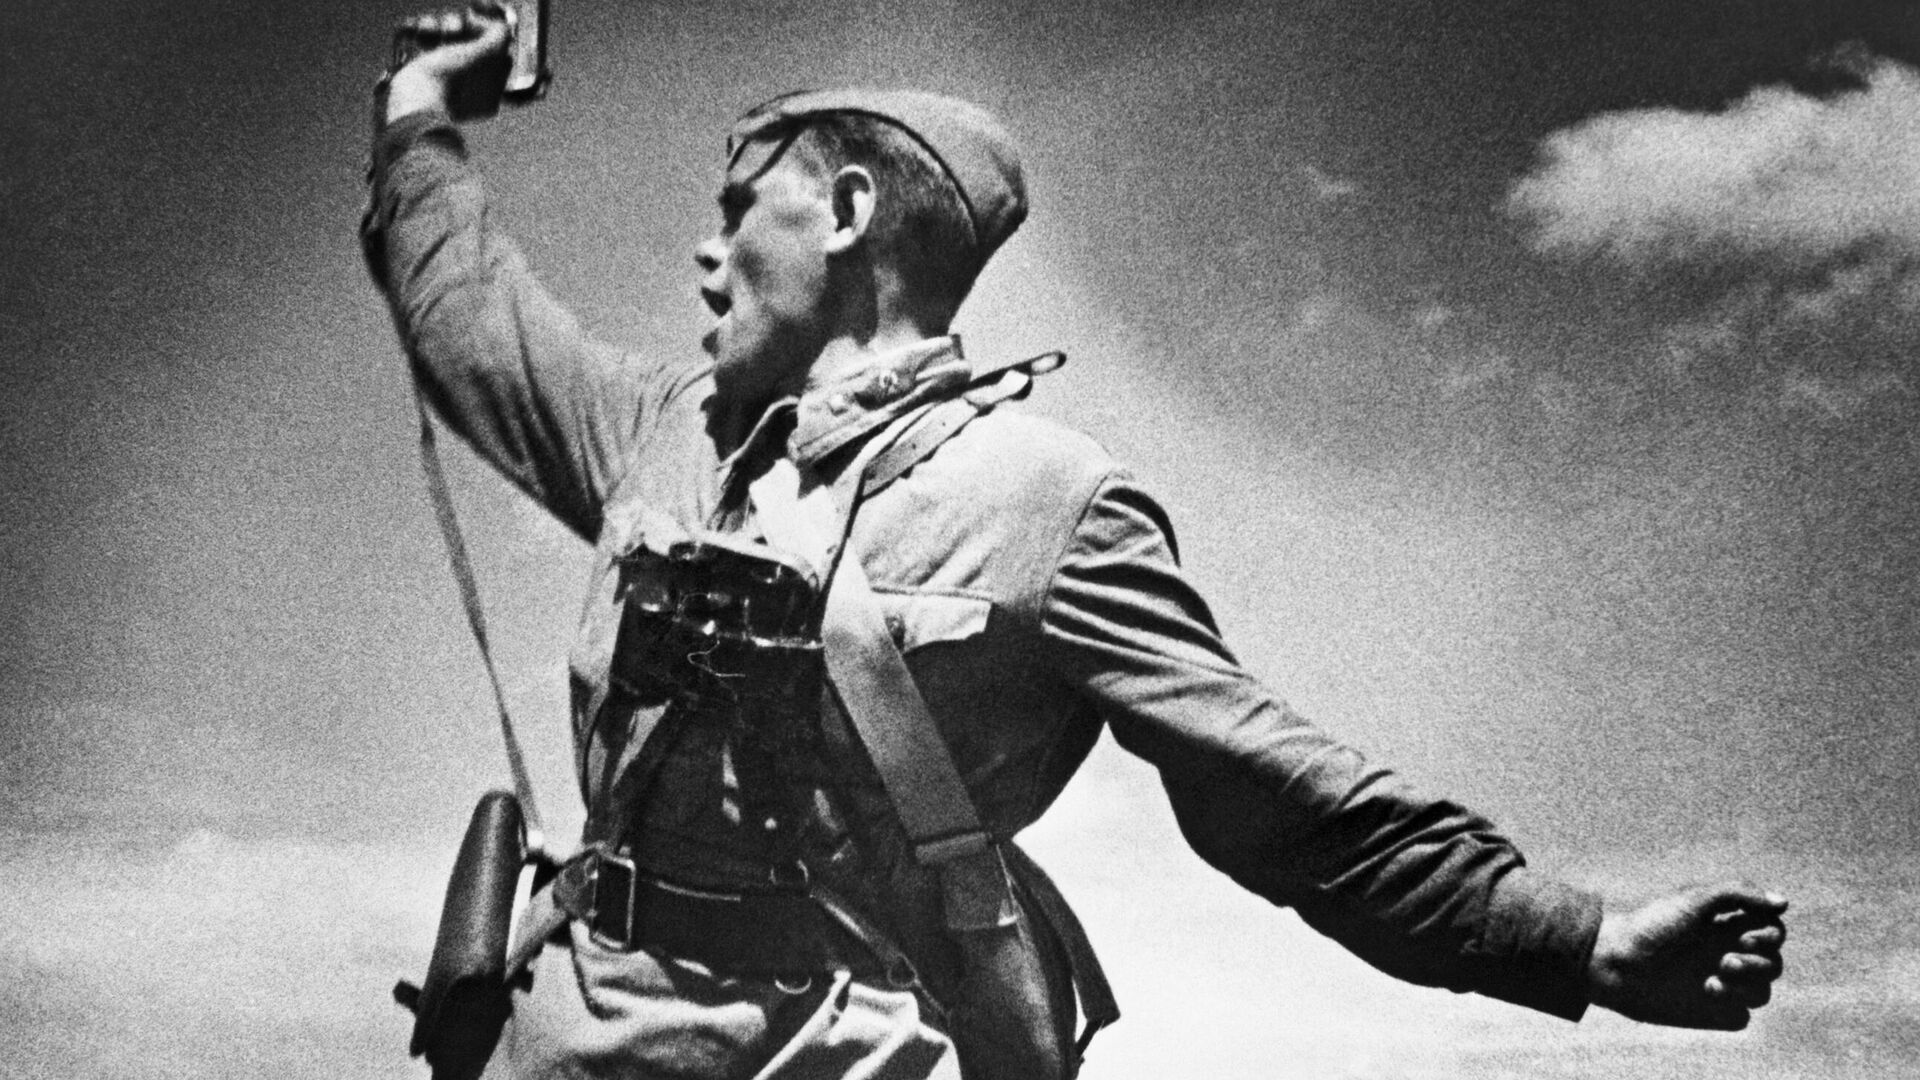 第18軍第4狙撃兵師団第220狙撃兵連隊の政治委員、アレクセイ・エリョーメンコを映した写真「大隊長」。エリョーメンコは負傷した中隊長に代わり、反撃のため部下を奮い立たせた。1942年7月、戦闘中にヴォロシロブグラード（現ルガンスク）州ホロシェー村近くで落命 - Sputnik 日本, 1920, 14.02.2023